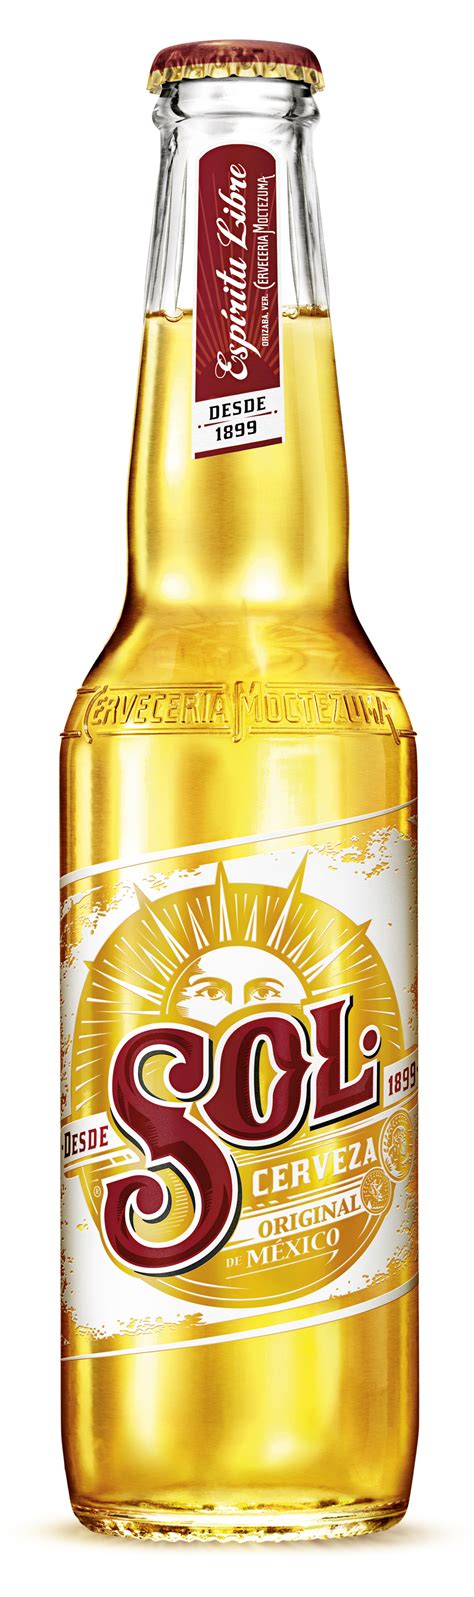 Sol Beer Brewery International